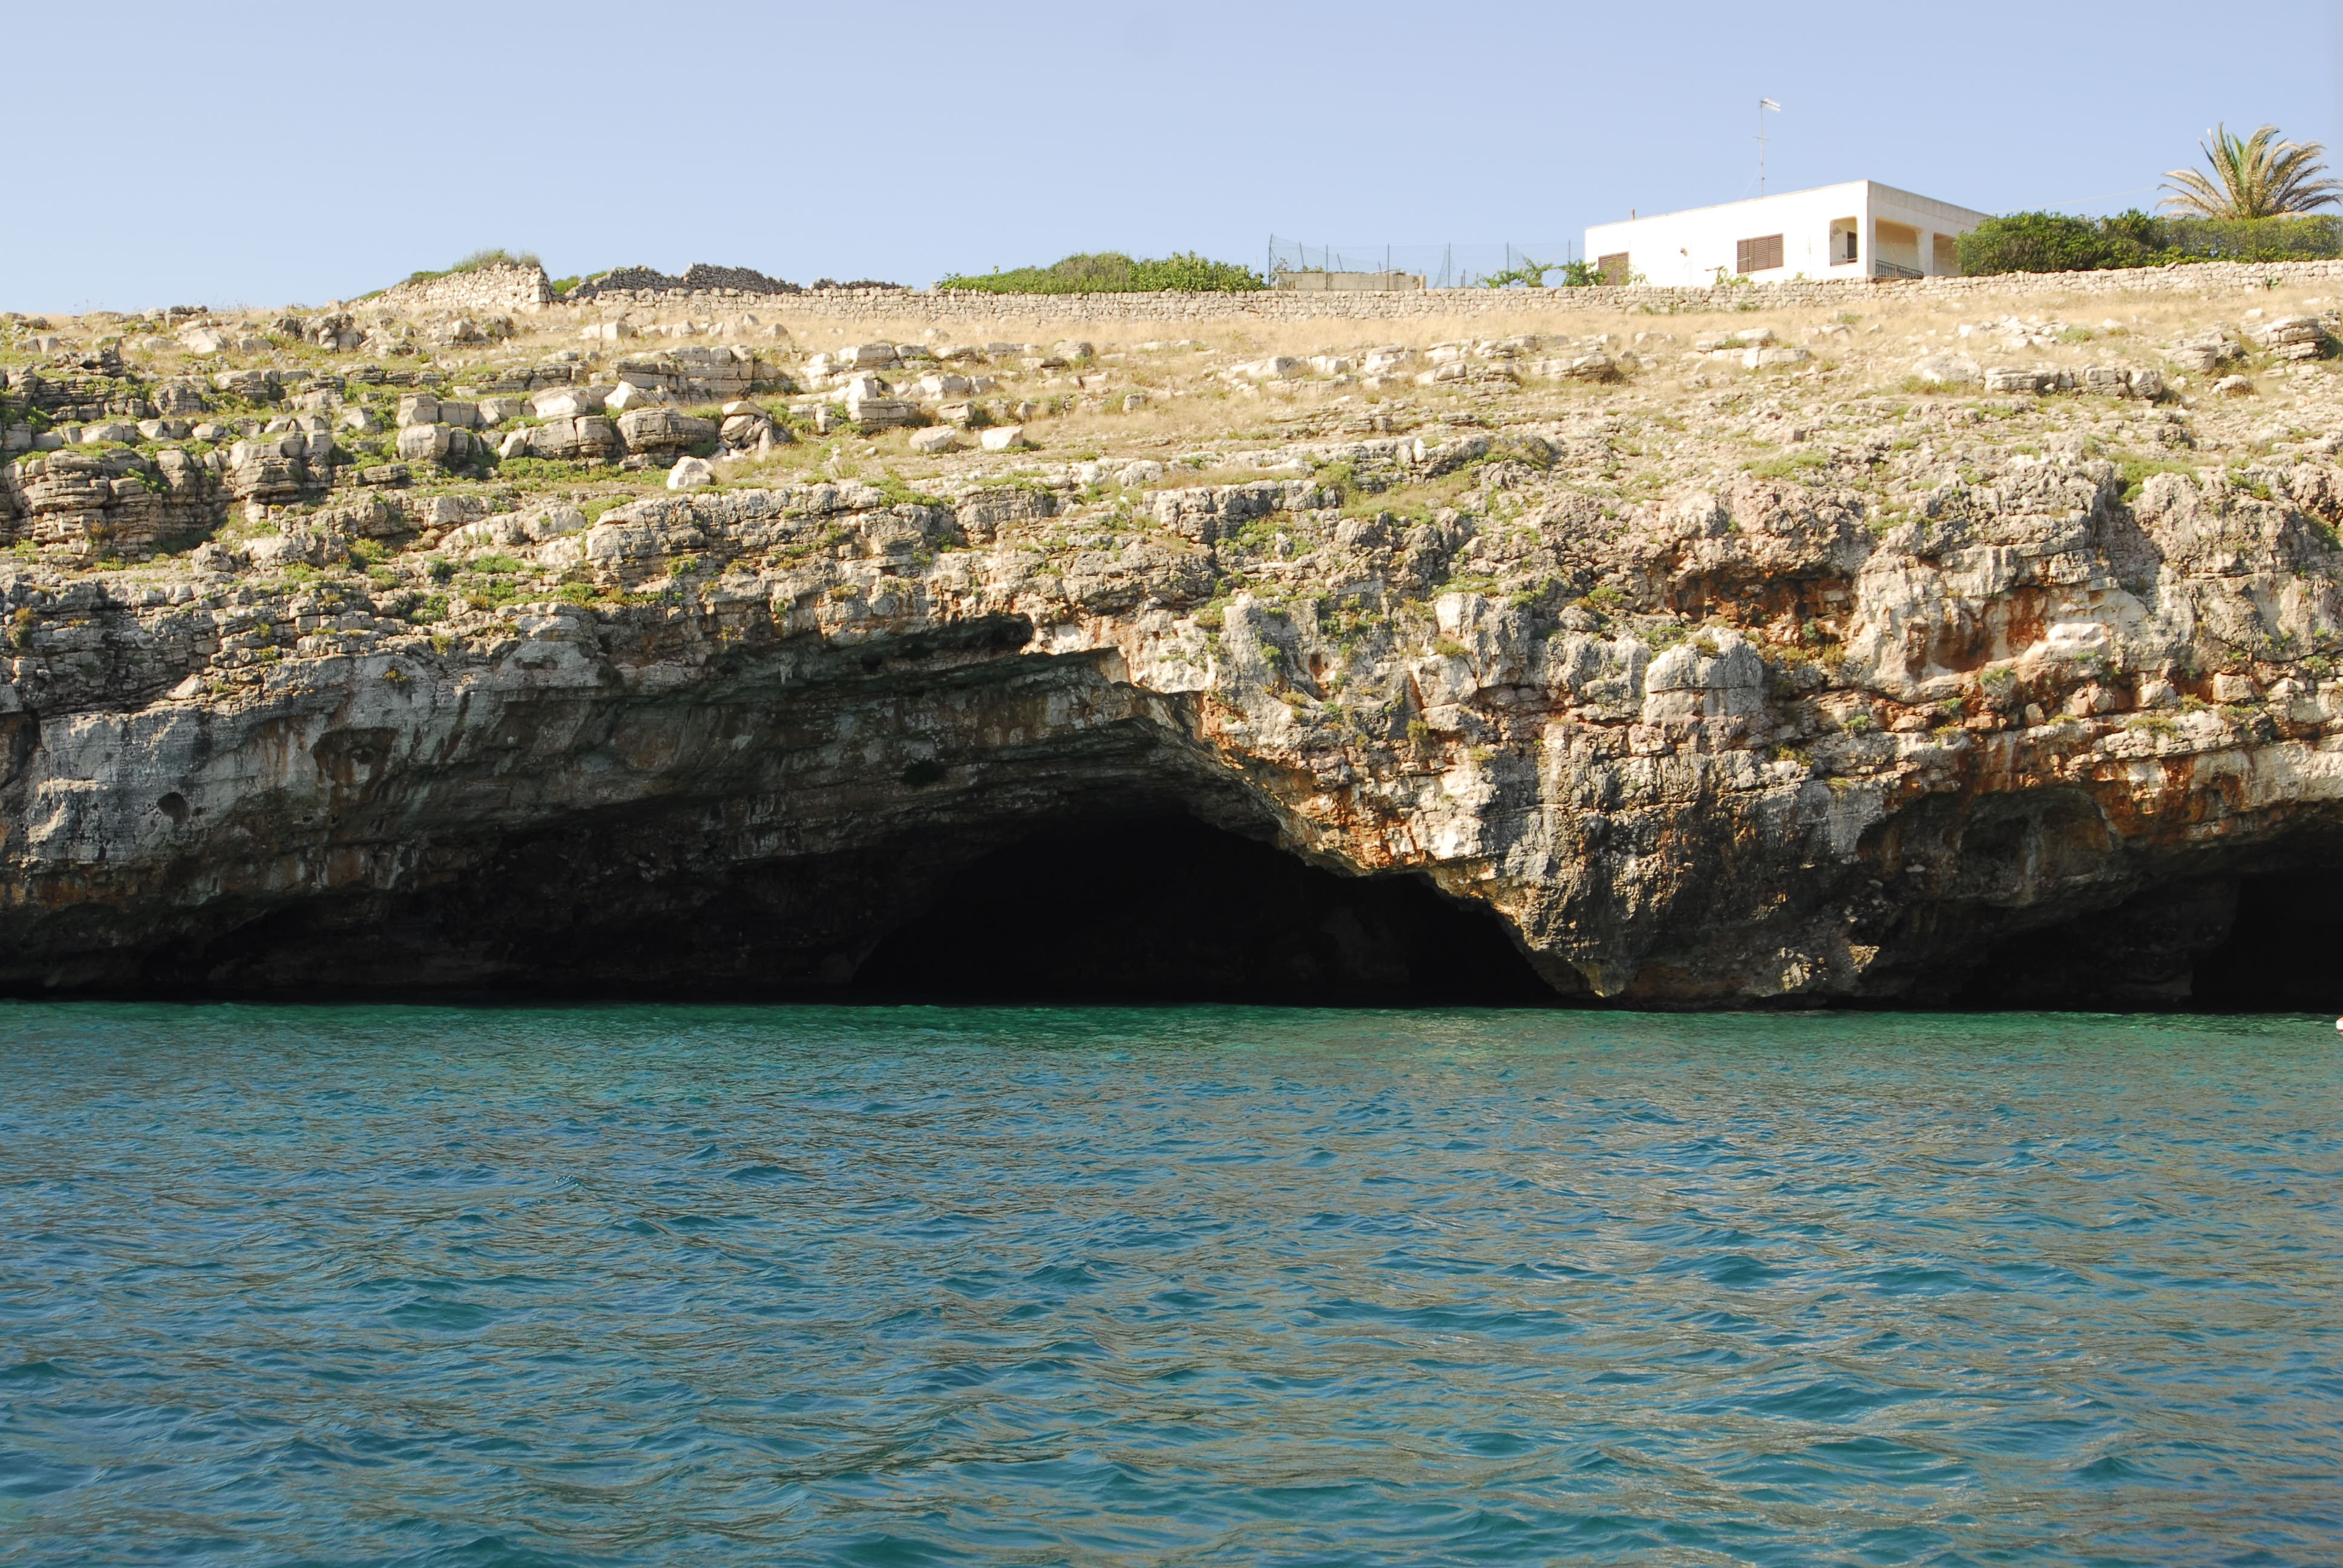 Grotte di Santa Maria di Leuca